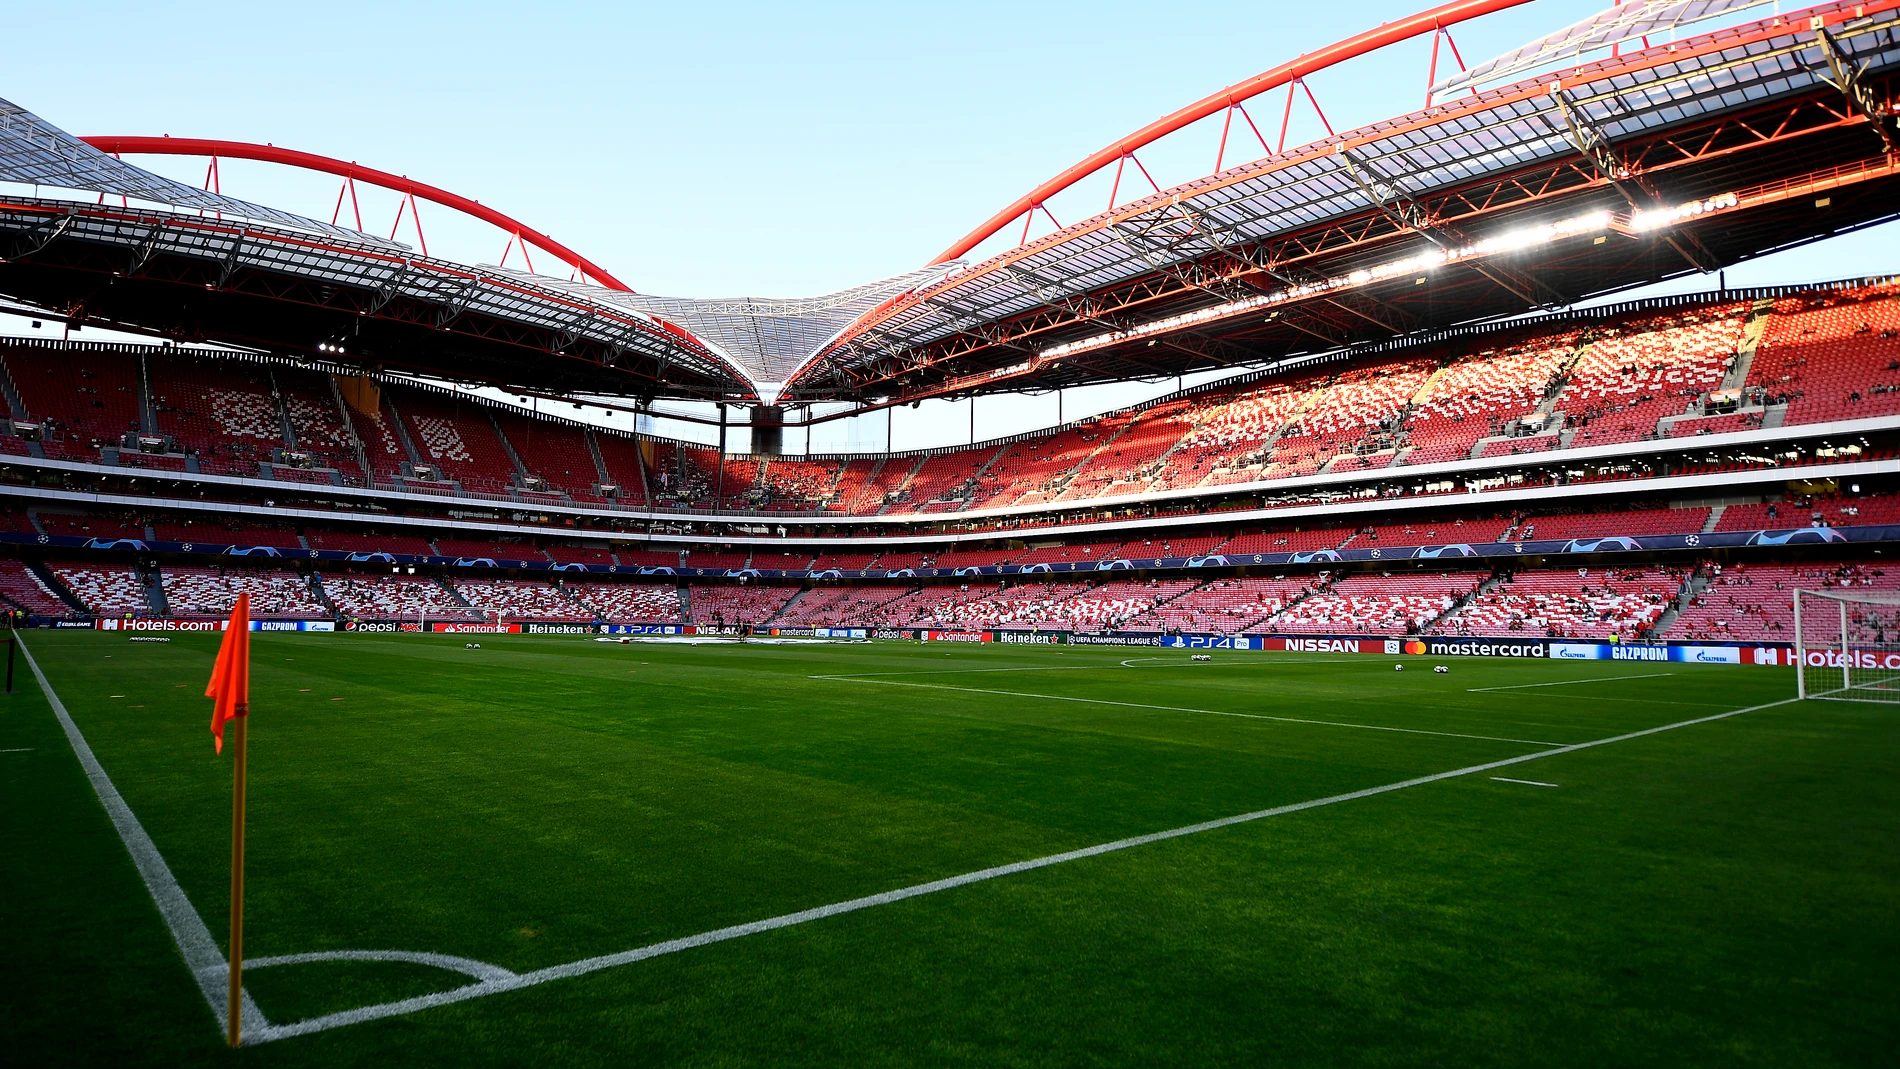 Estadio Da Luz (Benfica)